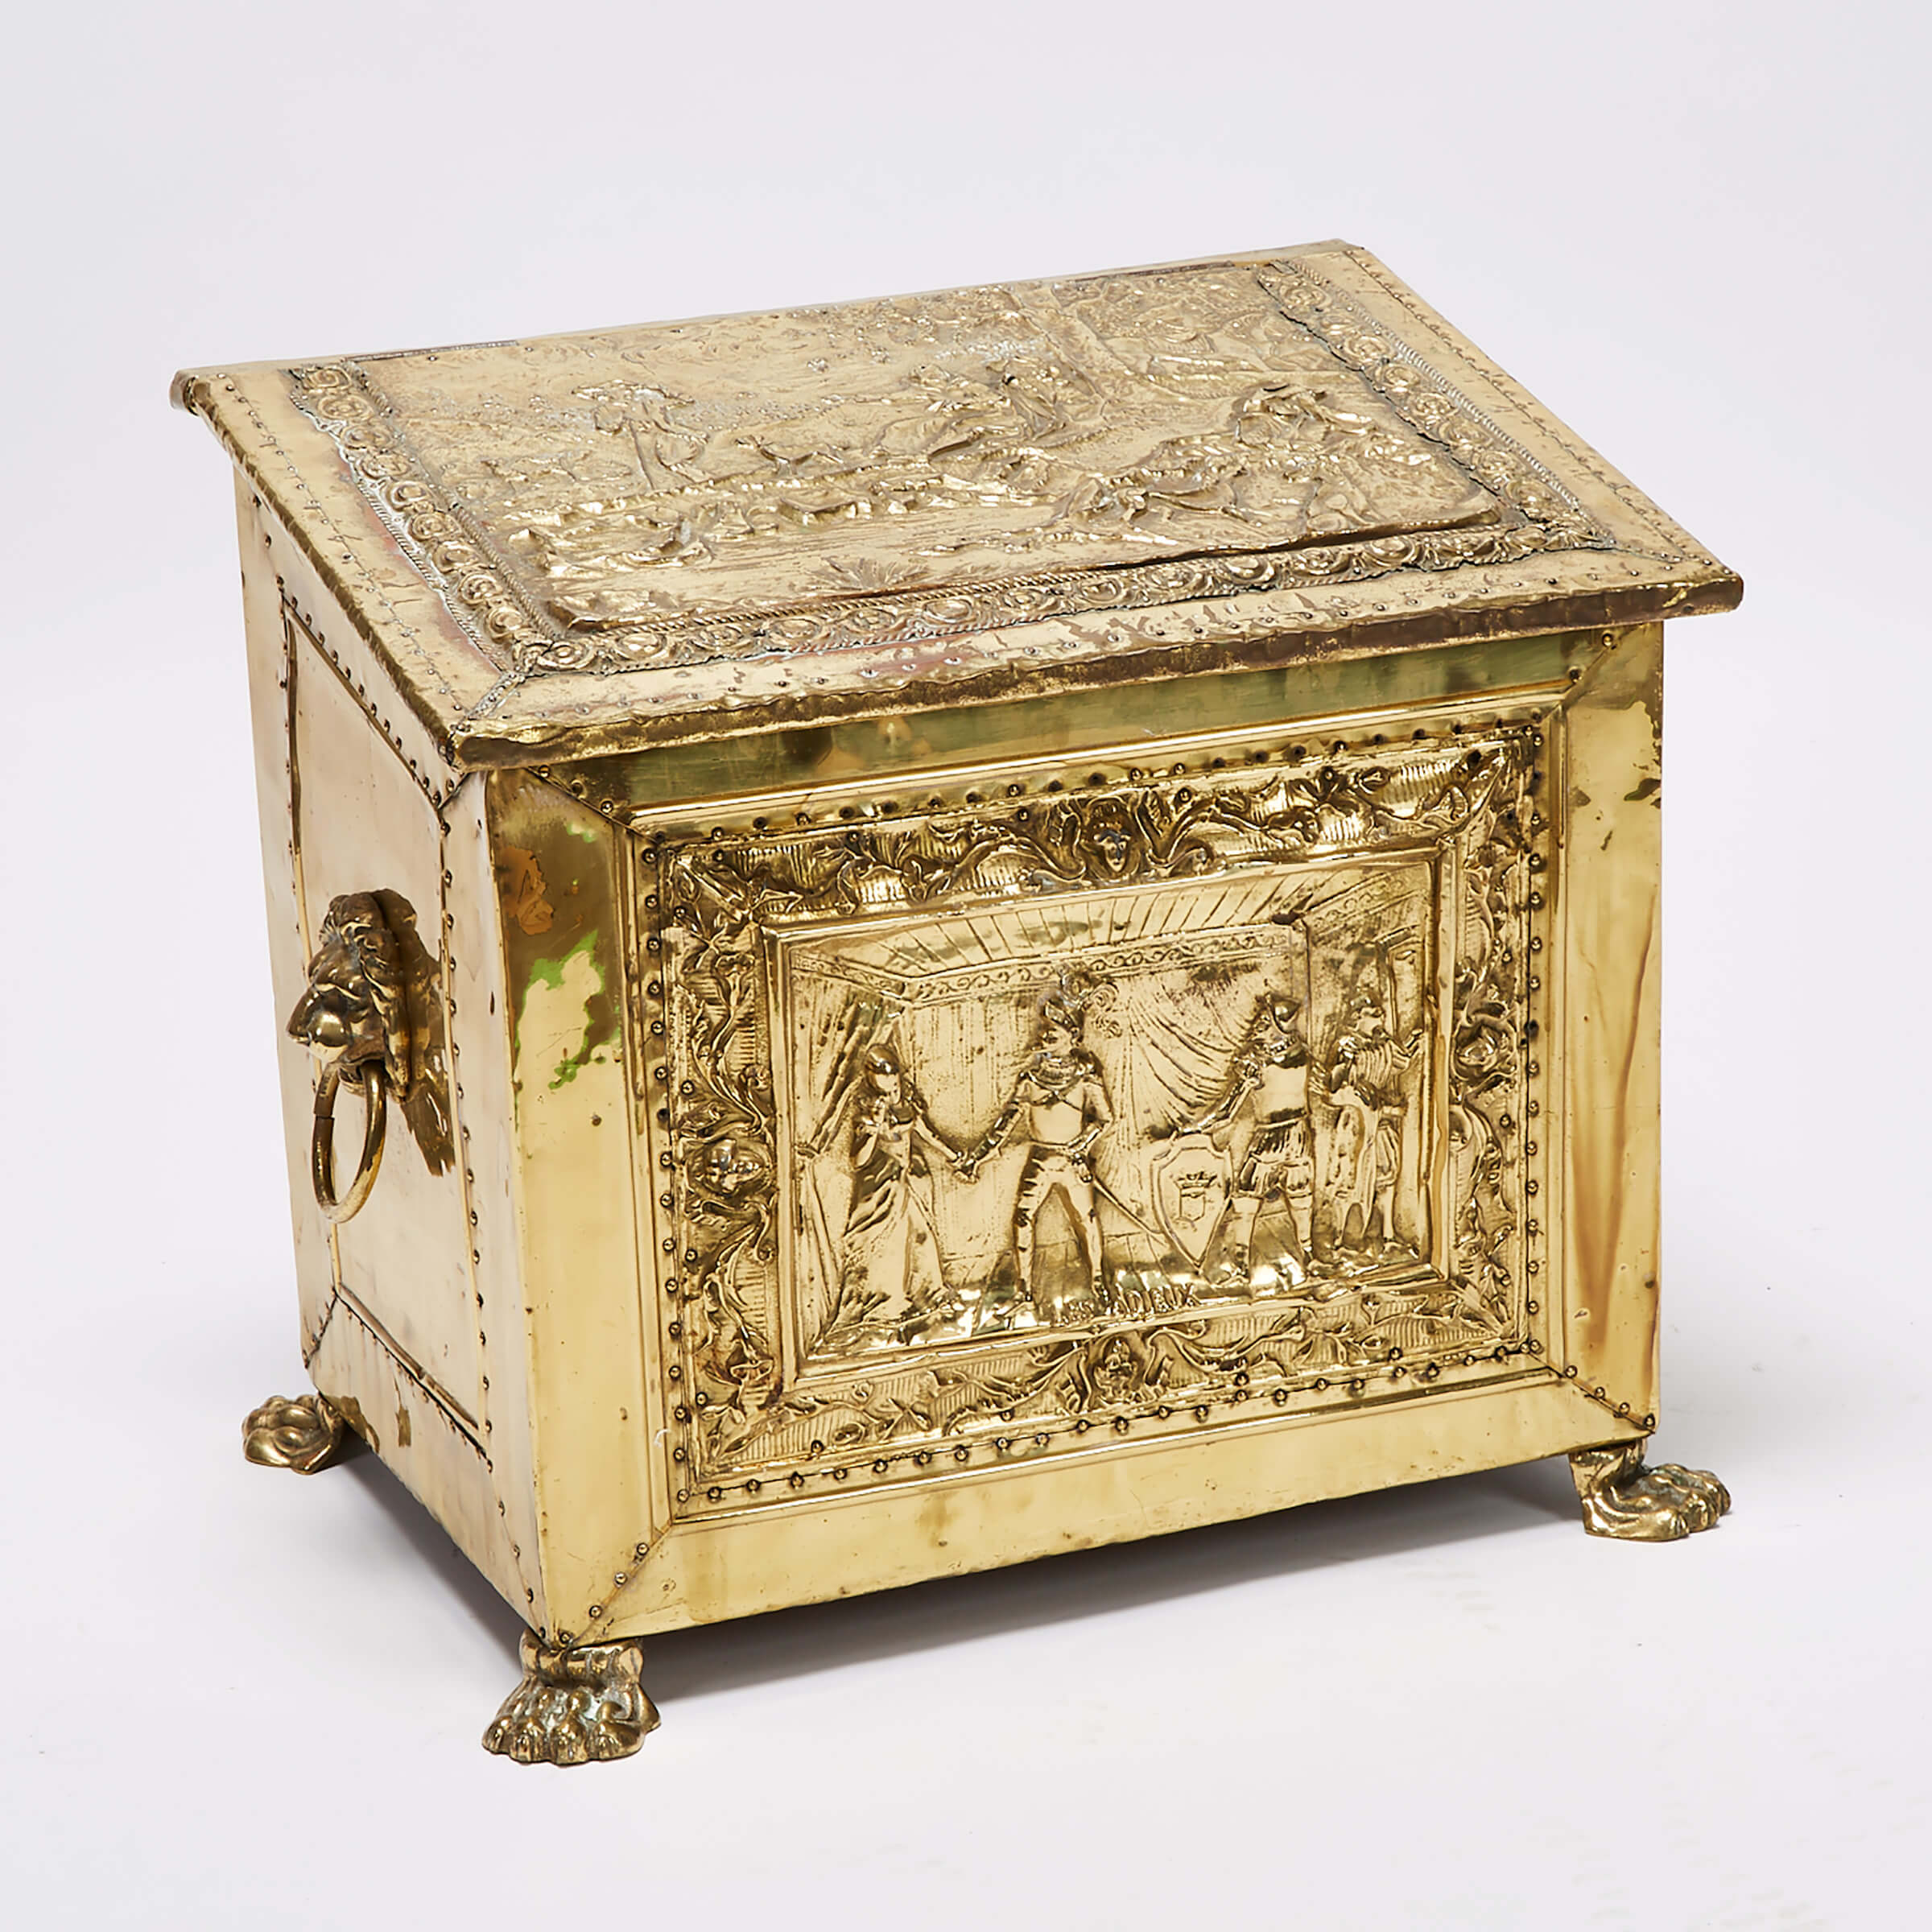 Victorian Renaissance Revival Brass Repoussé Fire Wood Box, 19th century